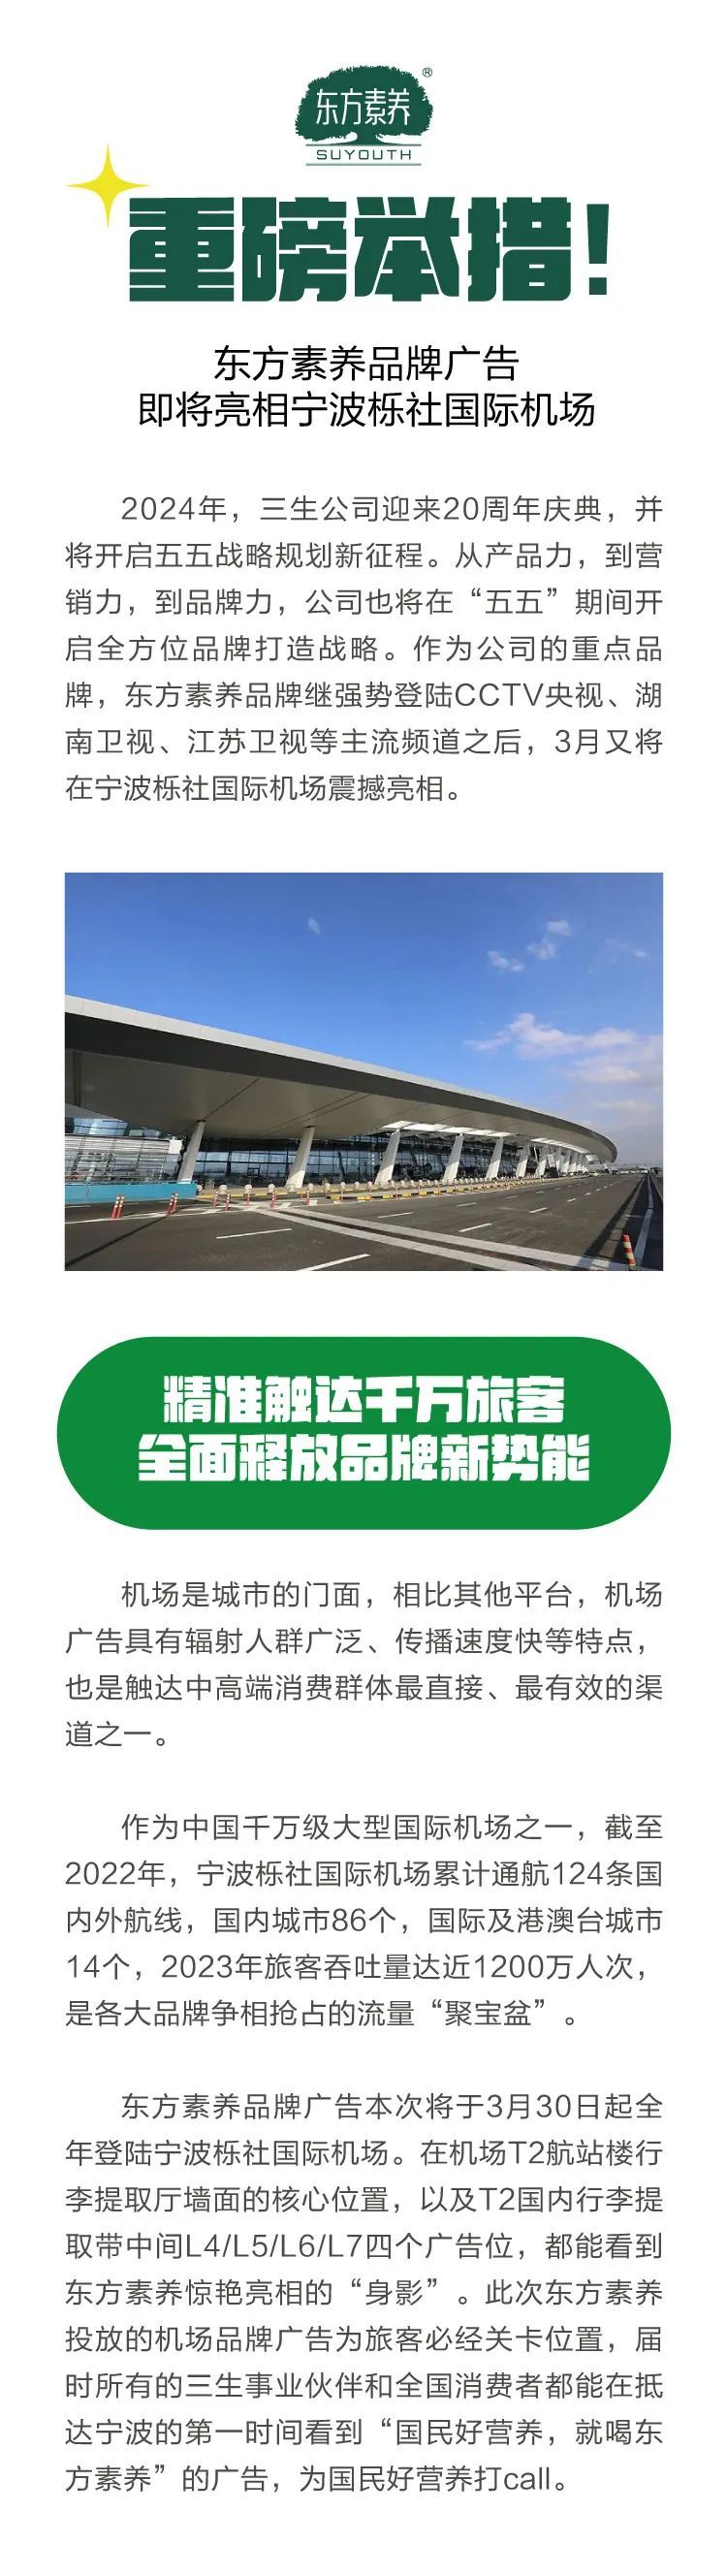 三生东方素养品牌广告即将亮相宁波栎社国际机场